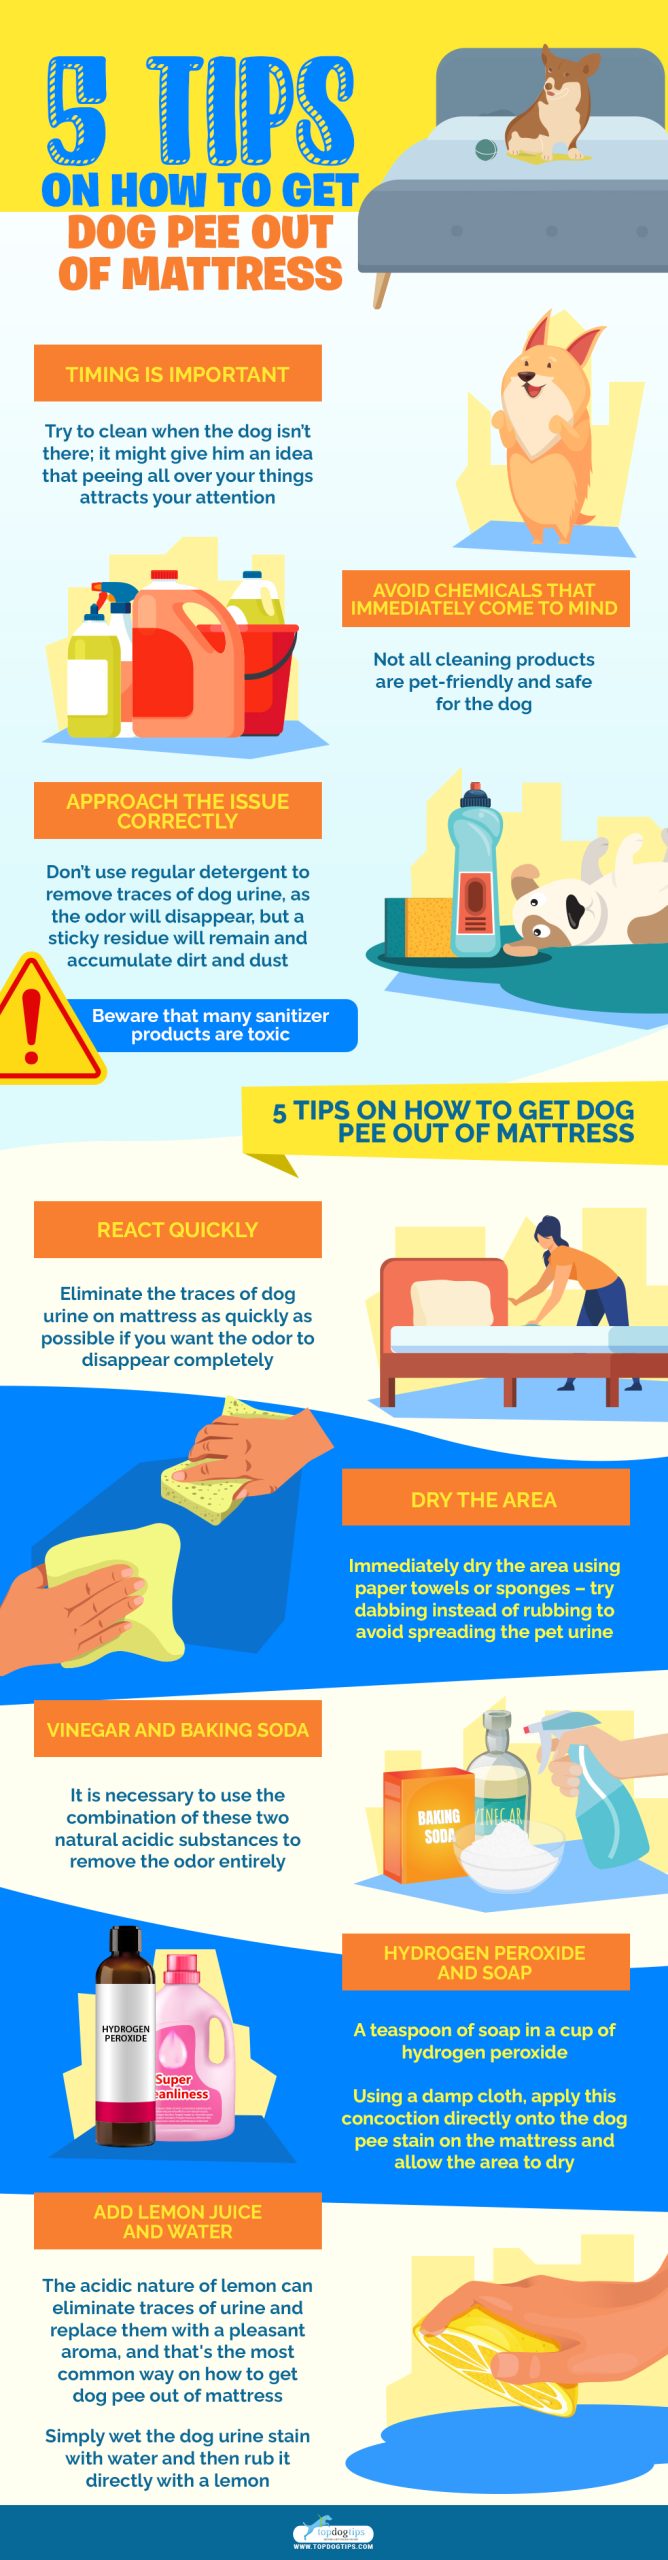 Stiptheid Reusachtig dodelijk 5 tips om hondenpoep uit een matras te krijgen - Stichting Signaal Hond:  Alles over honden